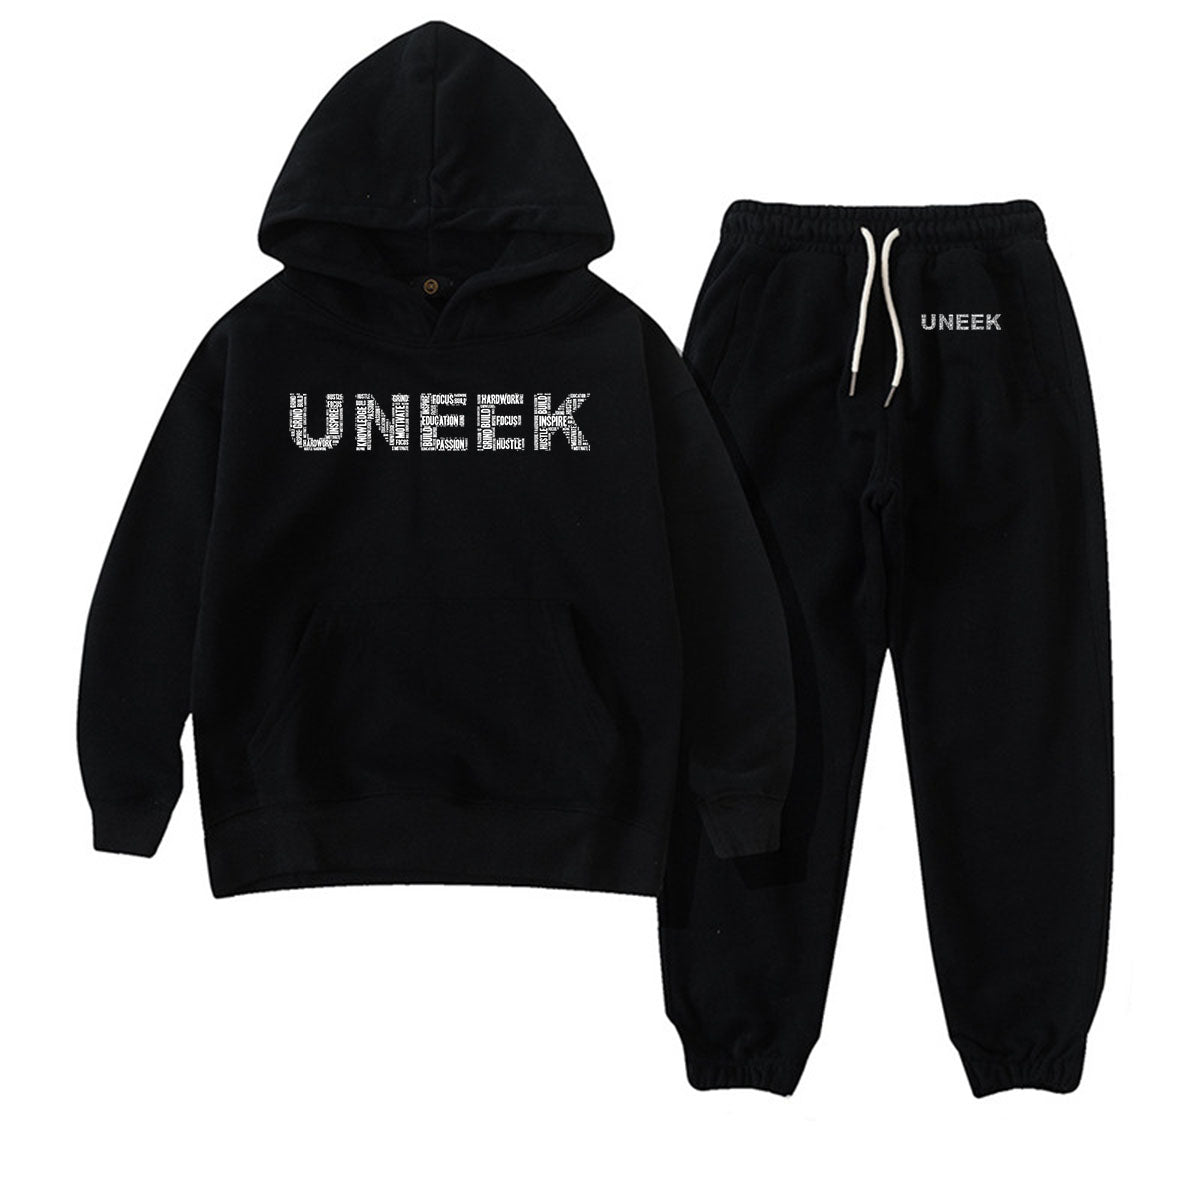 UNEEK Kids Sweatsuit Set